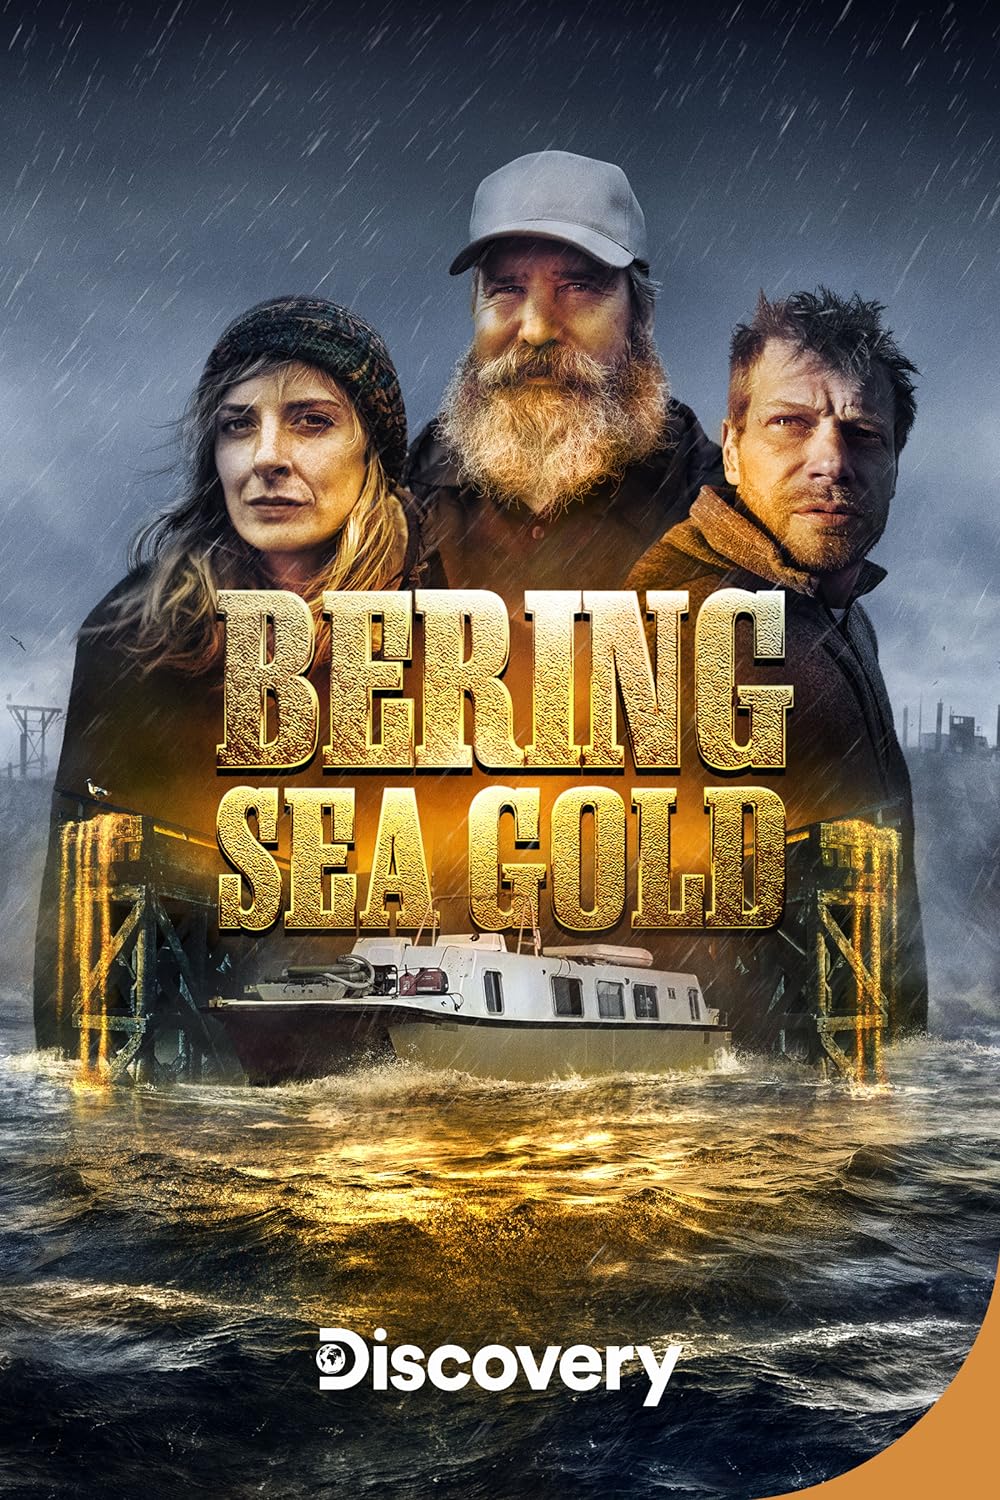 Bering Sea Gold